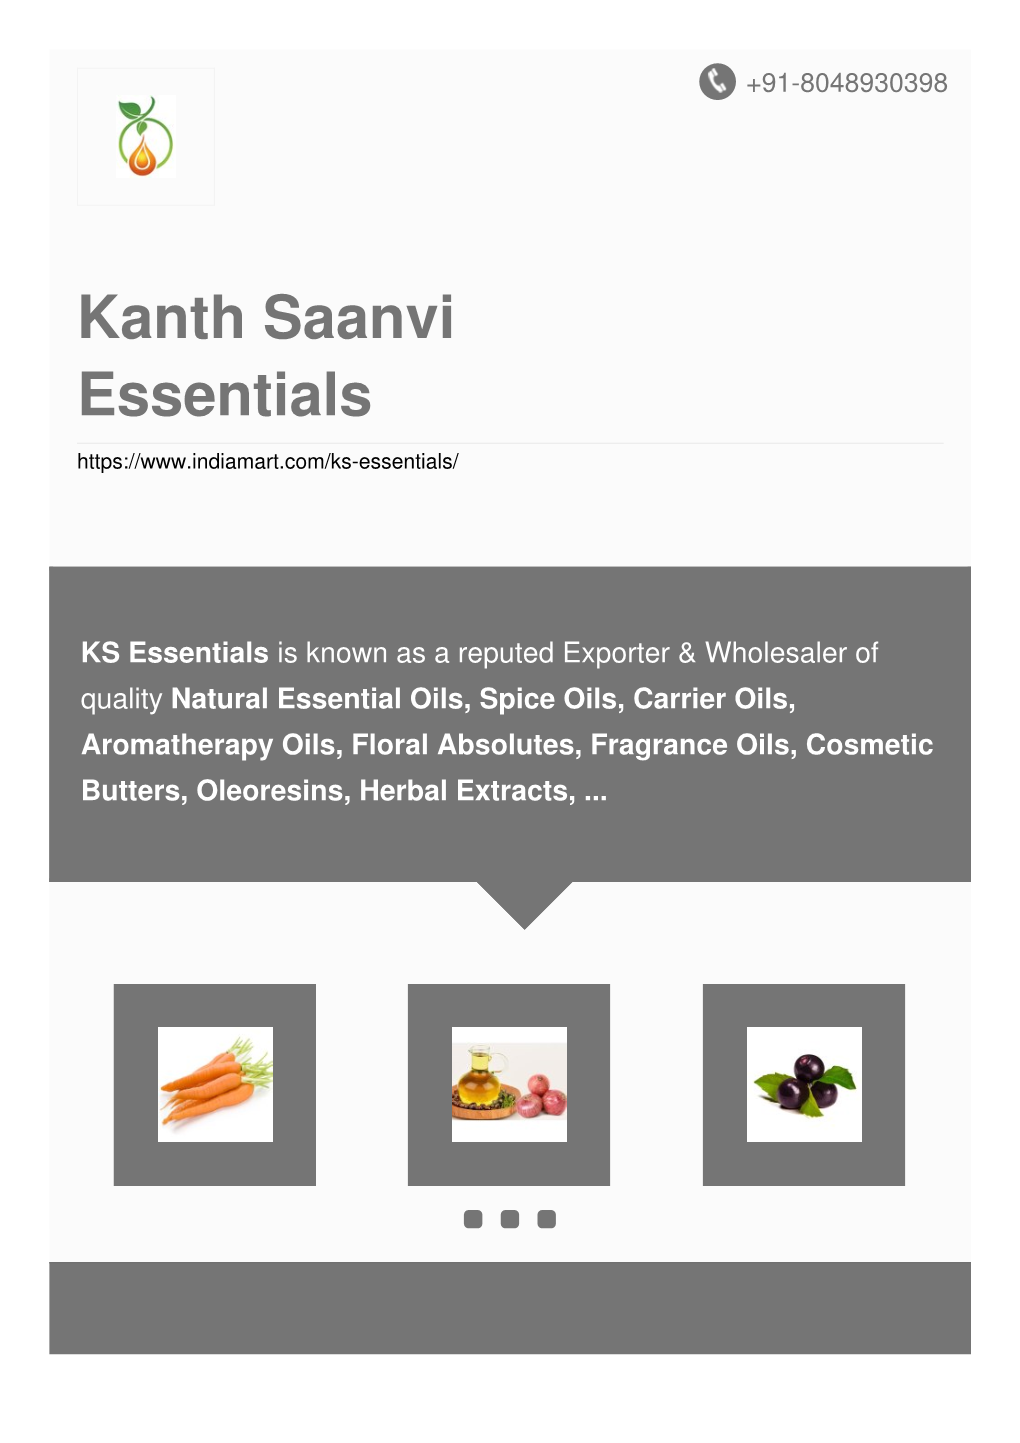 Kanth Saanvi Essentials